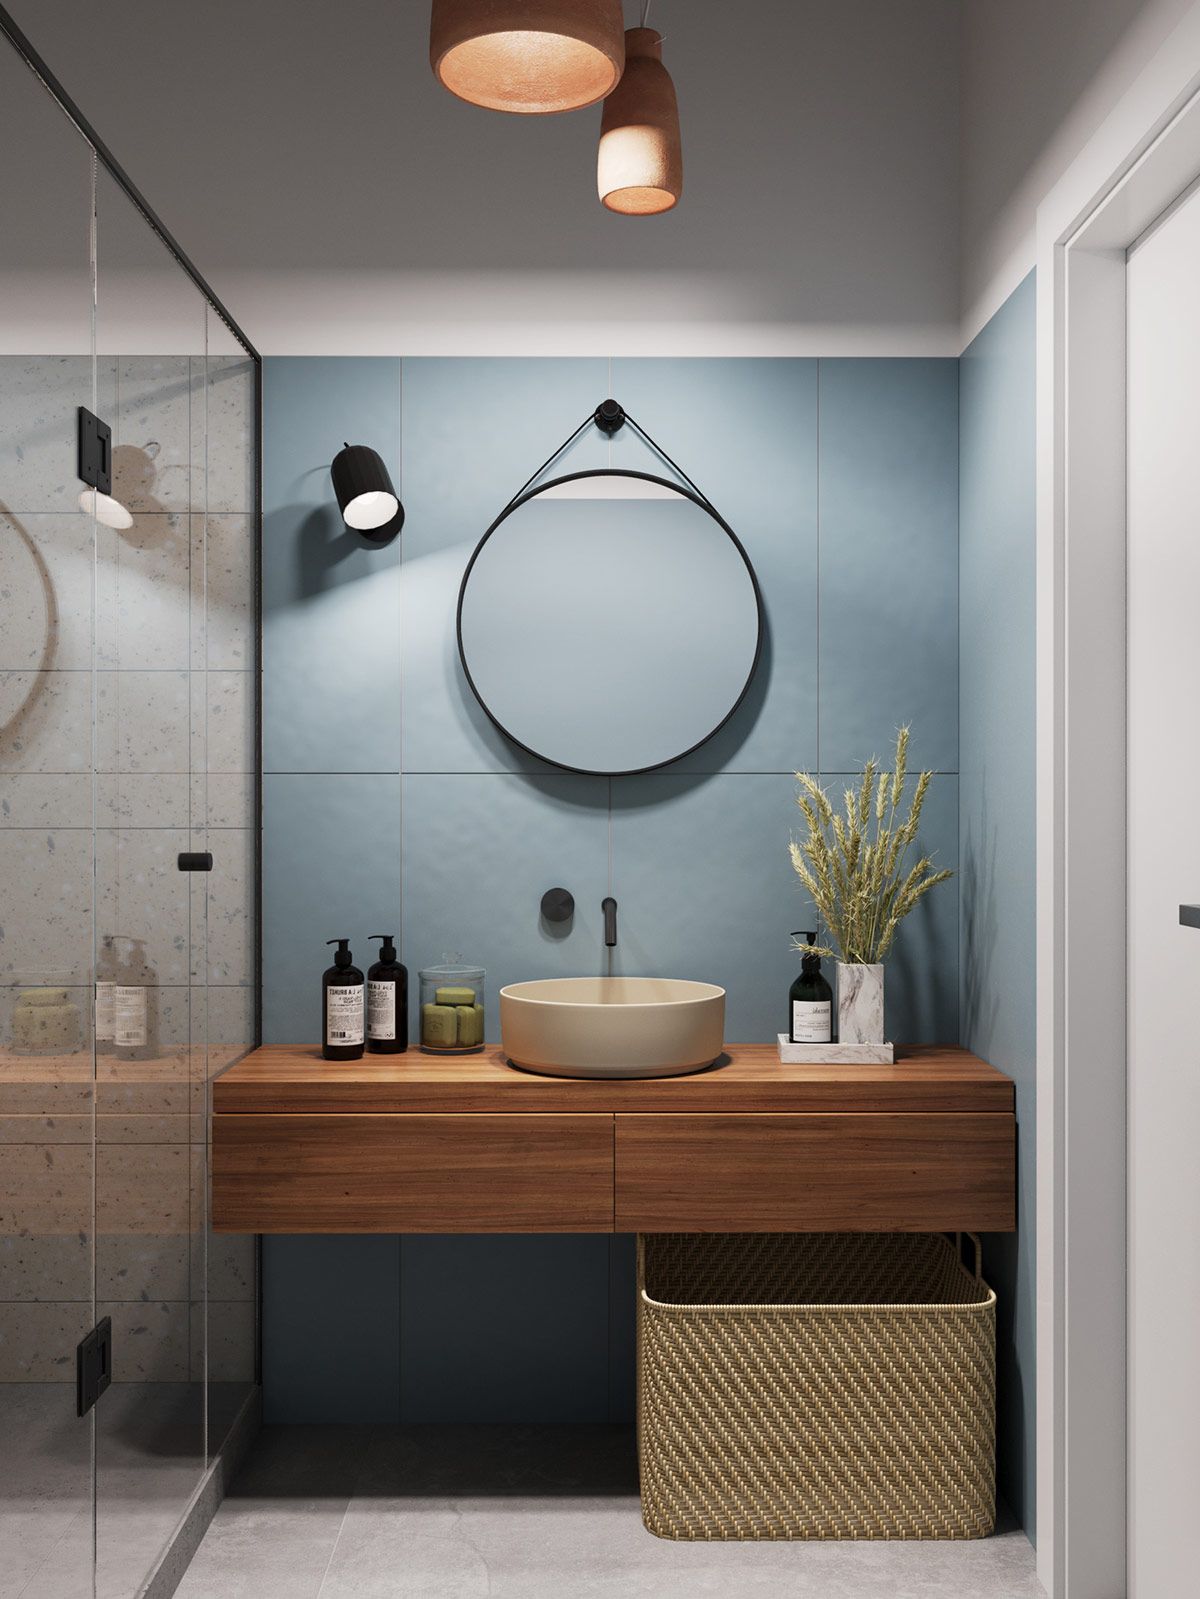 Đèn nhà vệ sinh kaizen sẽ là sự lựa chọn hoàn hảo cho những ai muốn tối ưu hóa không gian nhà vệ sinh của mình. Với thiết kế thông minh, đèn nhà vệ sinh kaizen không chỉ mang đến ánh sáng tối ưu cho không gian nhà vệ sinh của bạn, mà còn giúp bạn tiết kiệm điện năng và tiền bạc.